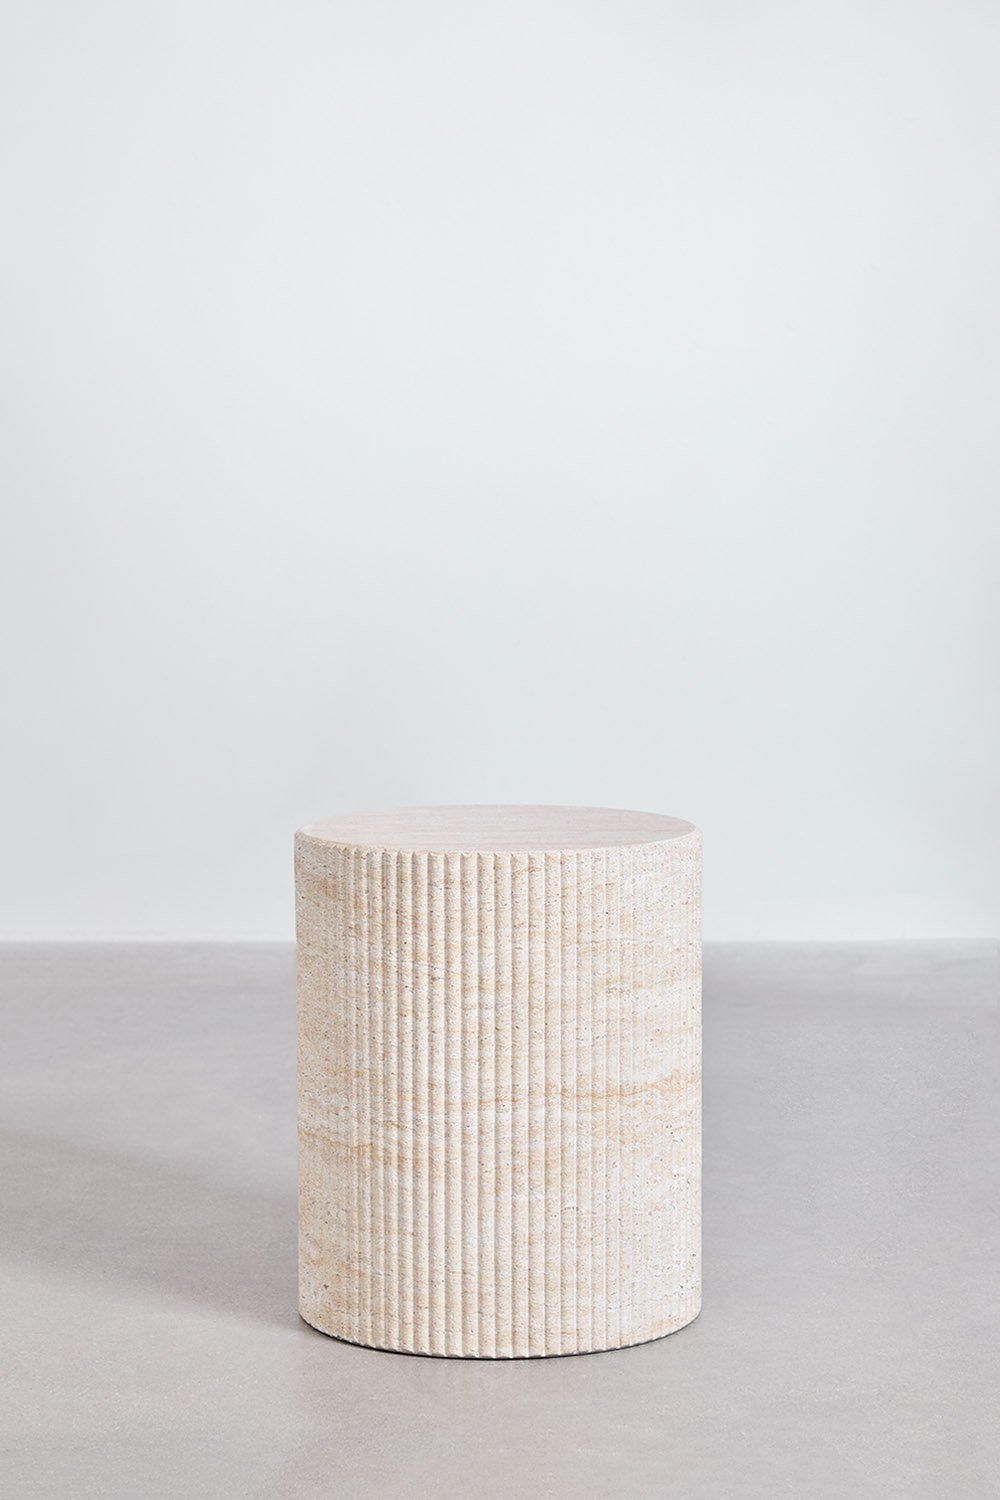 Tavolino rotondo in cemento effetto travertino (Ø38 cm) Velia, immagine della galleria 2